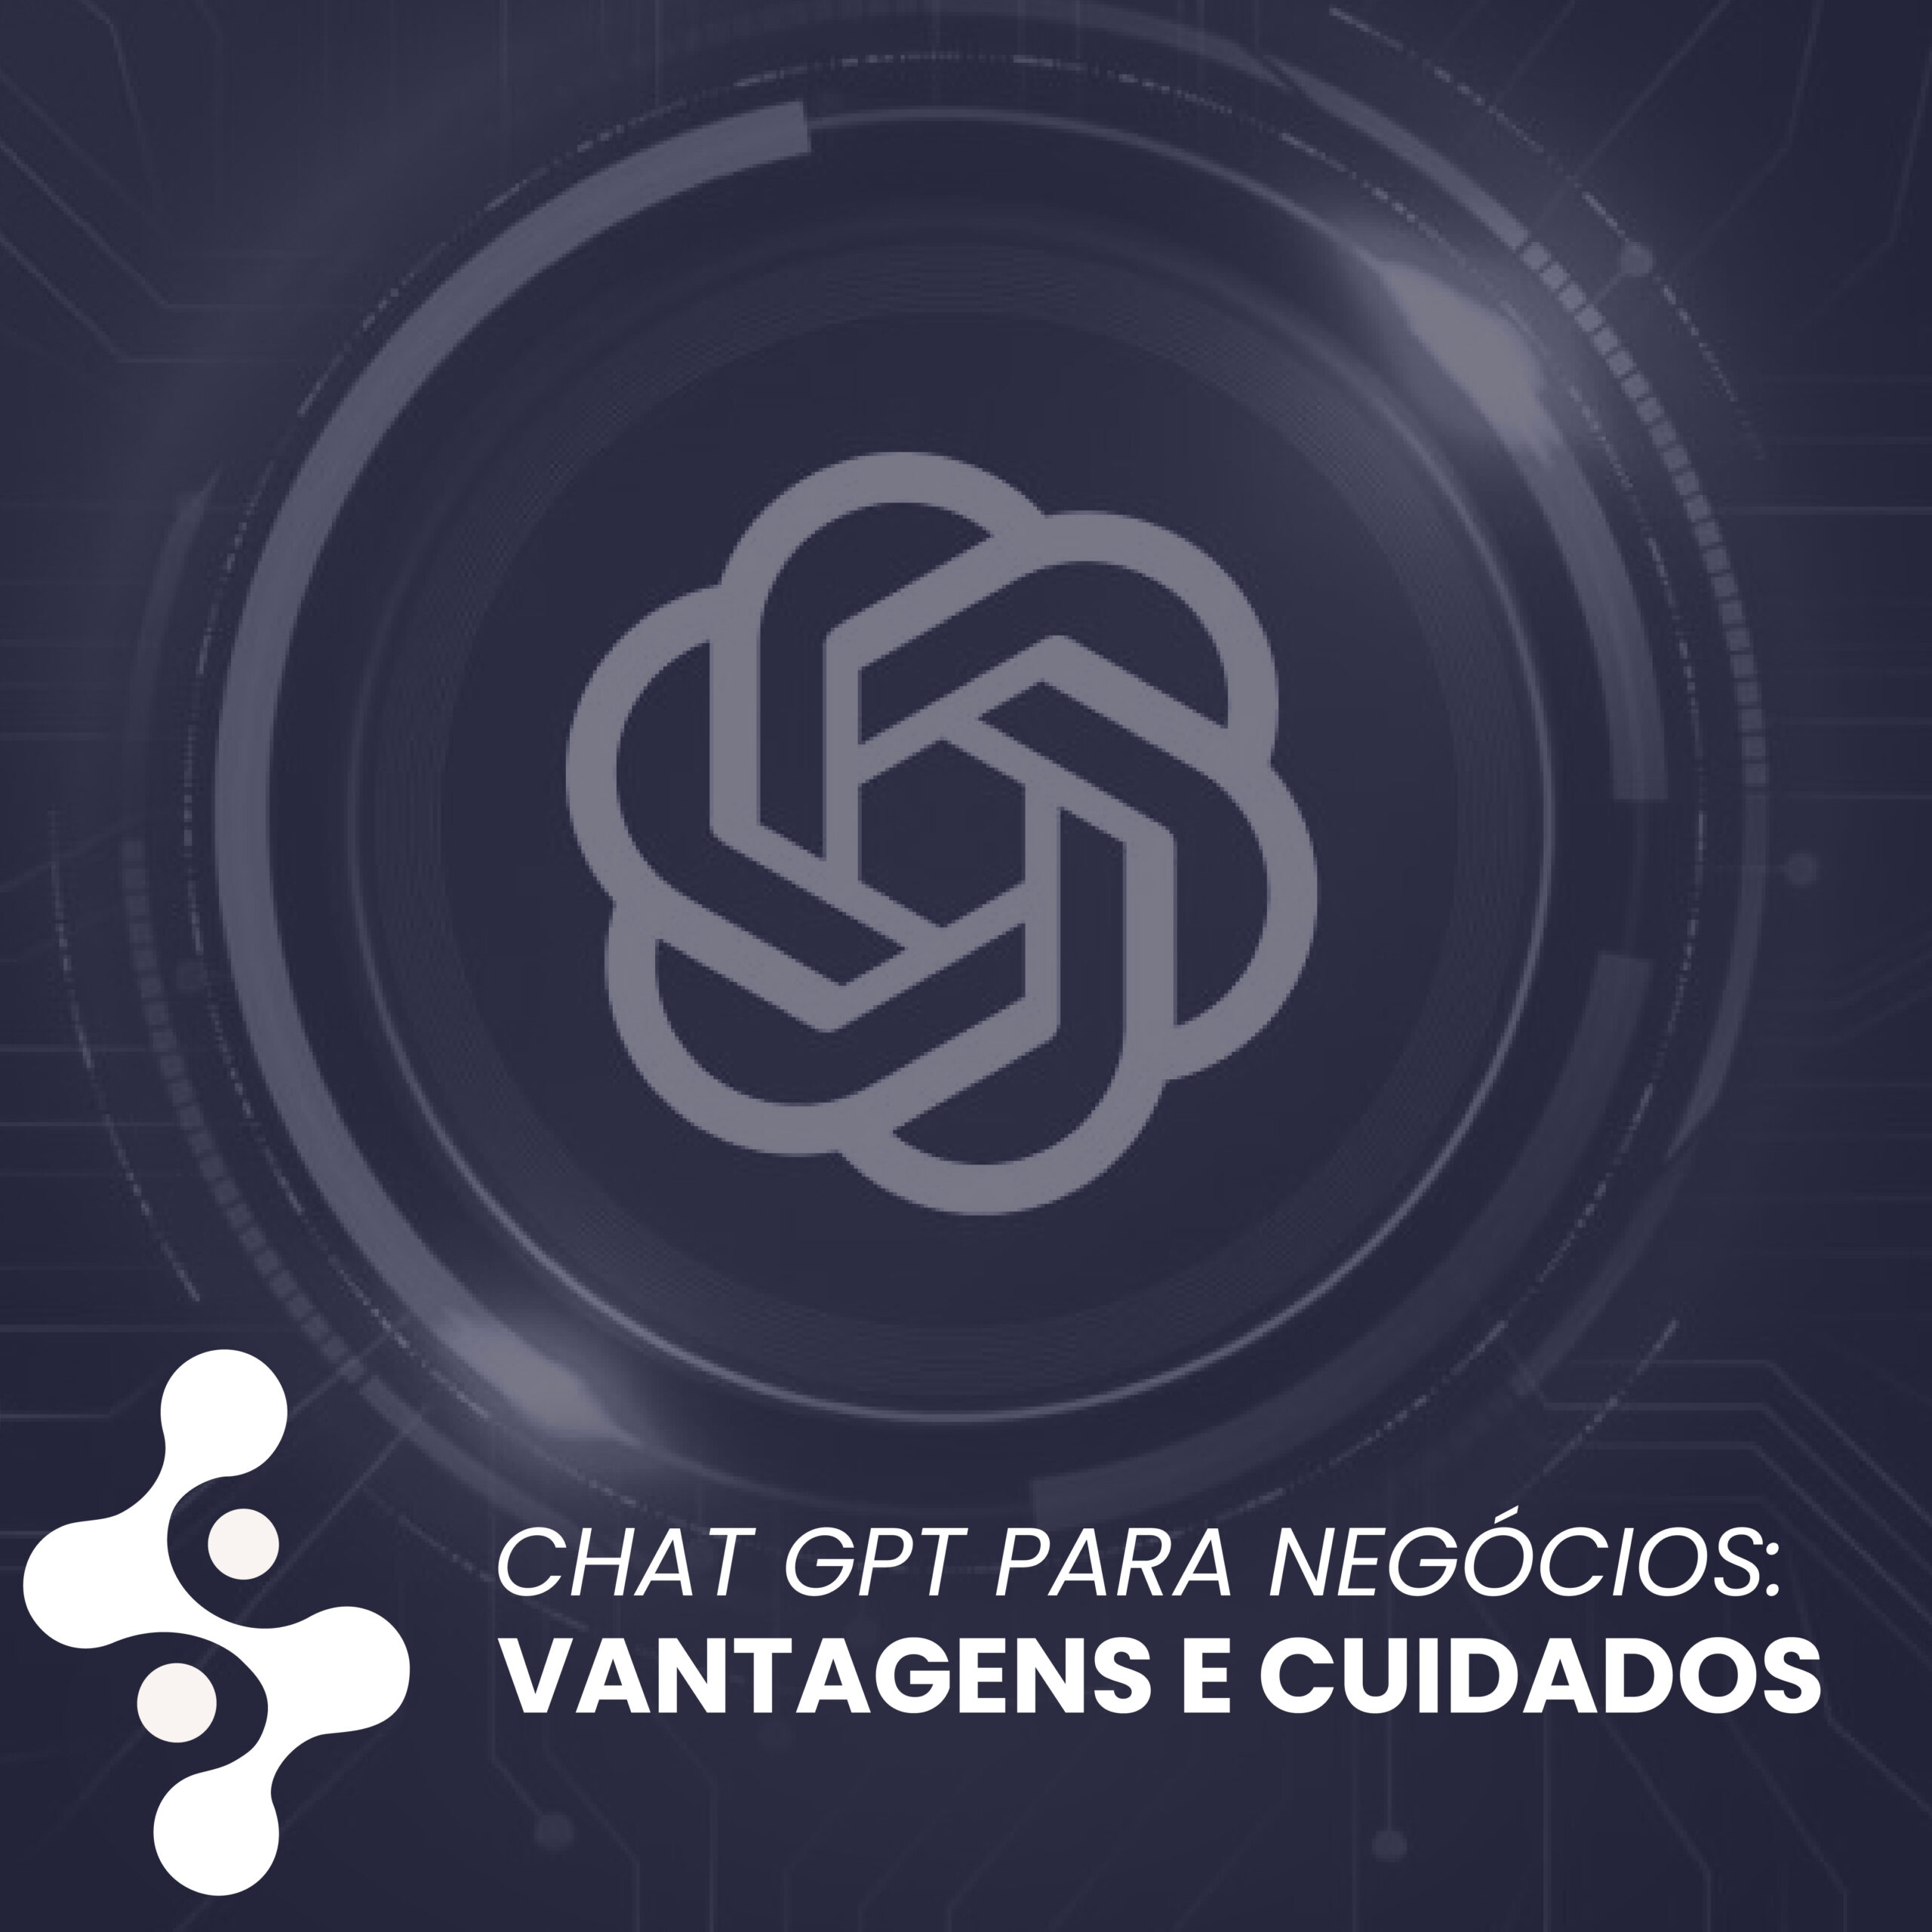 Chat GPT para negócios: Vantagens e cuidados. 